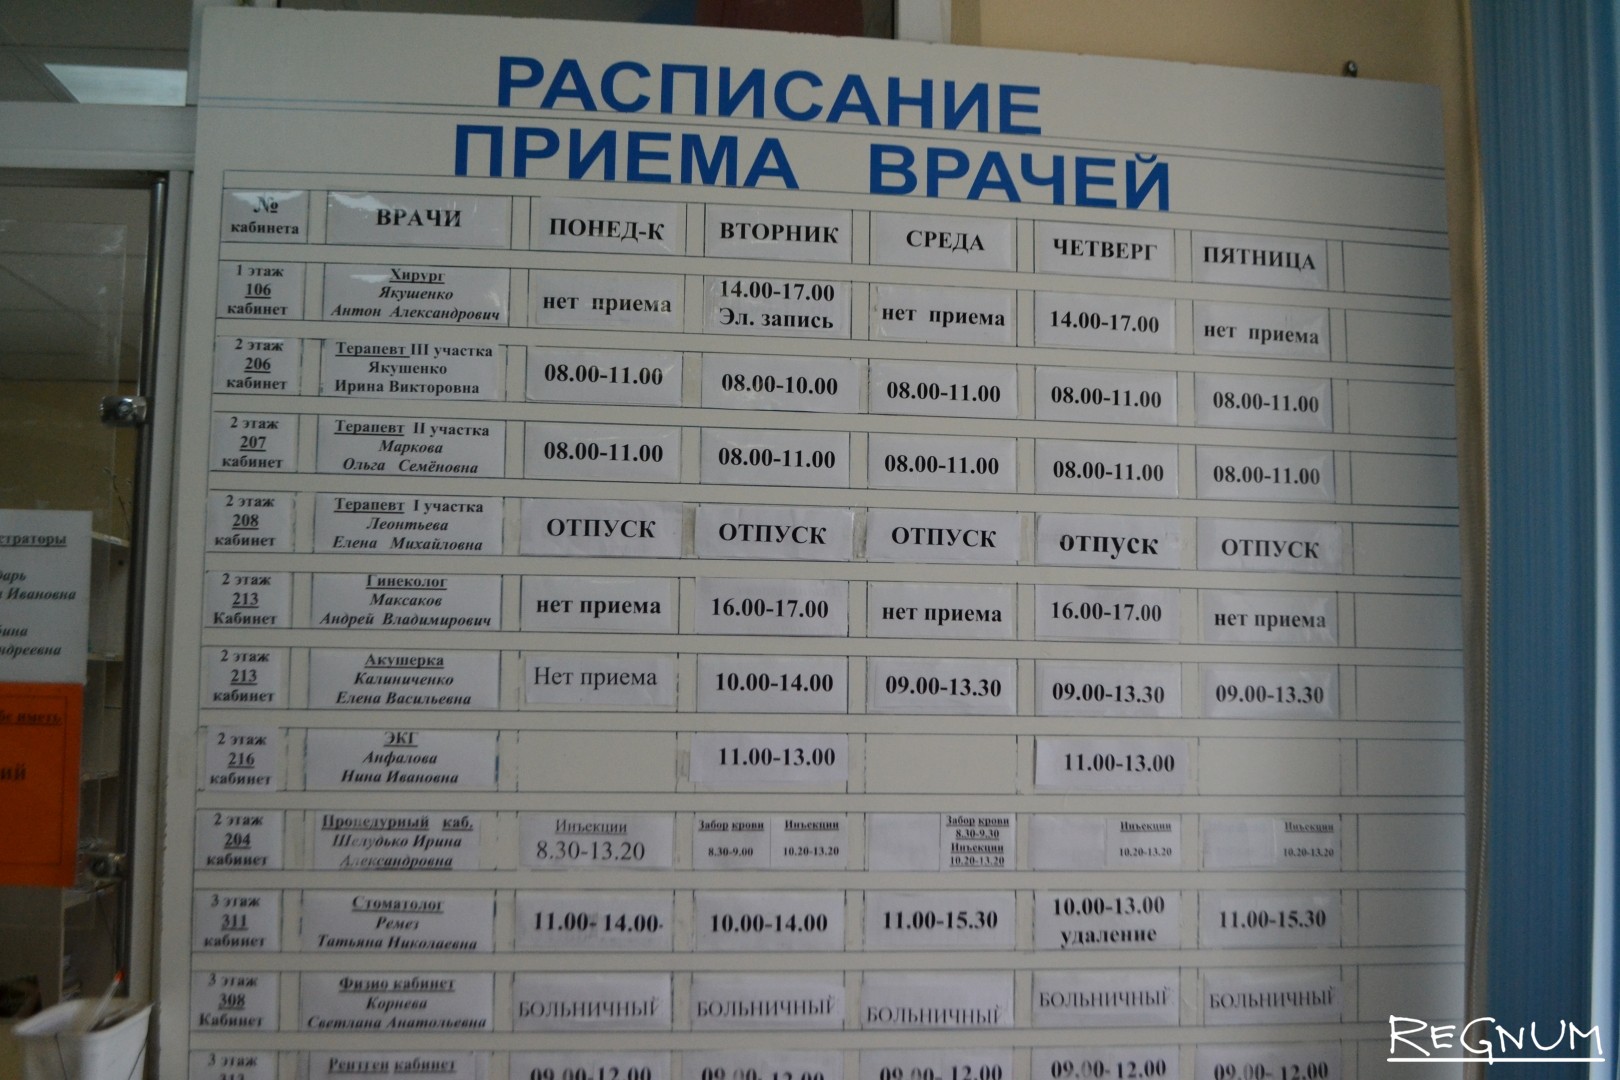 Соколова 9 телефон регистратуры